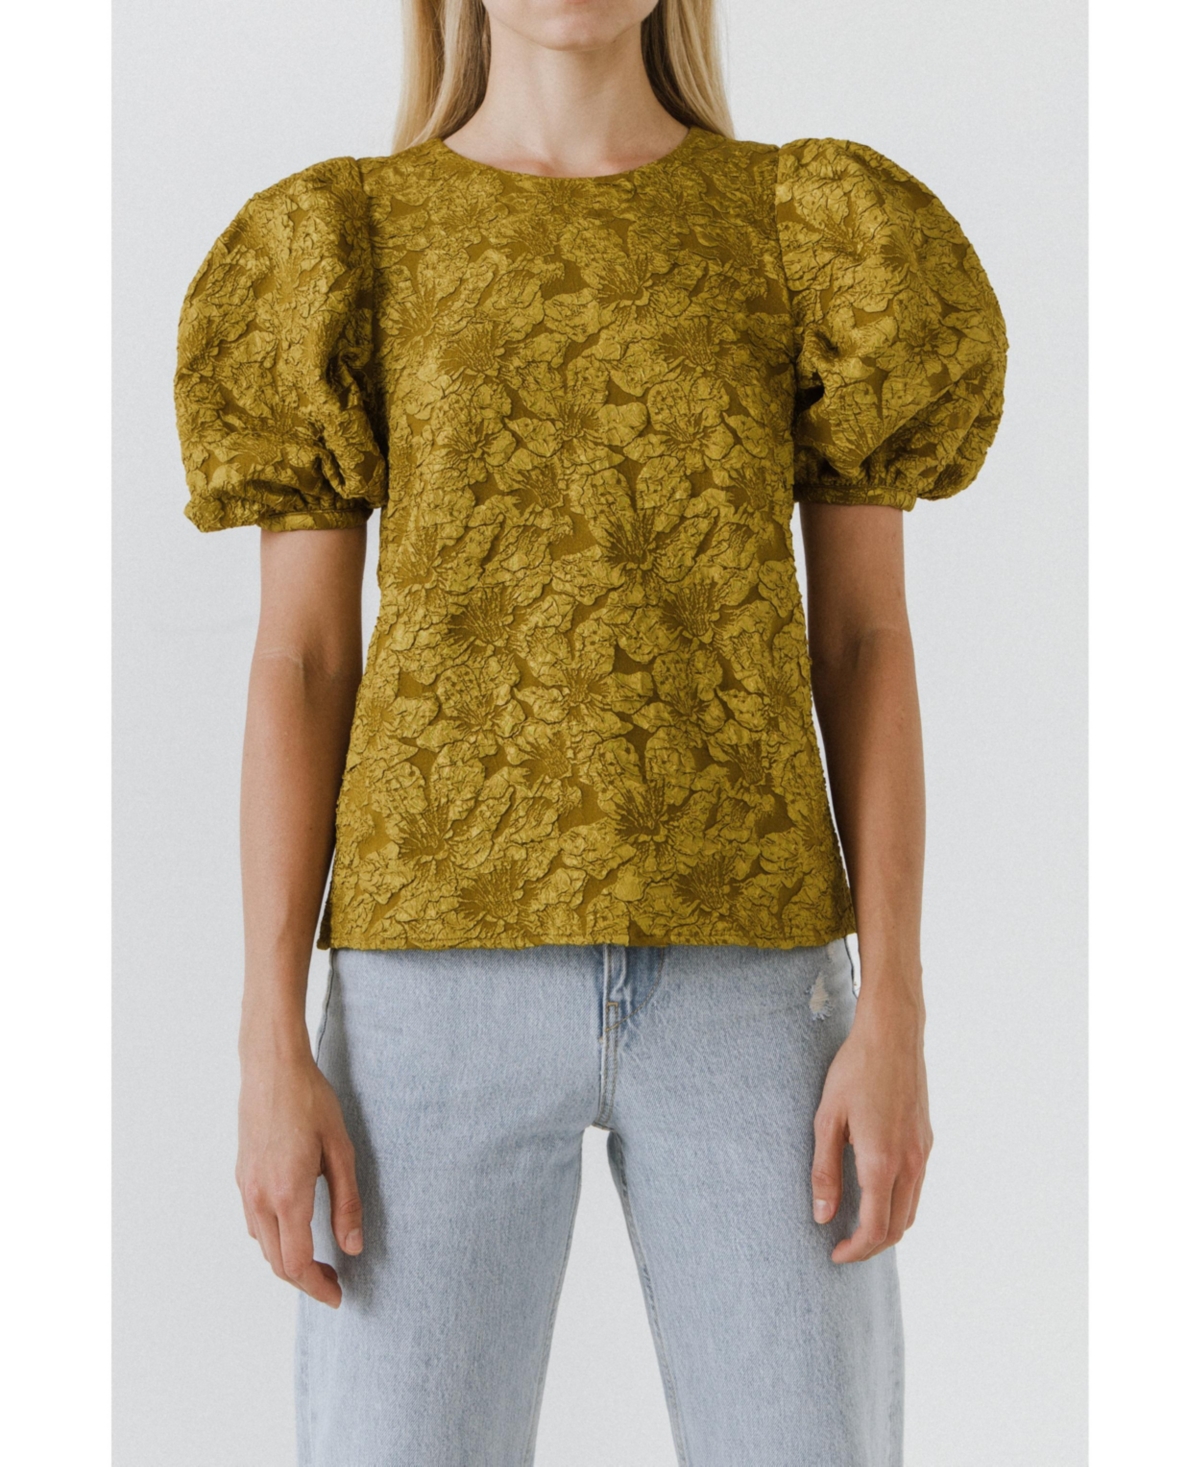 Women's Texture Fabric Top w/ Puff Short Sleeve - Navy